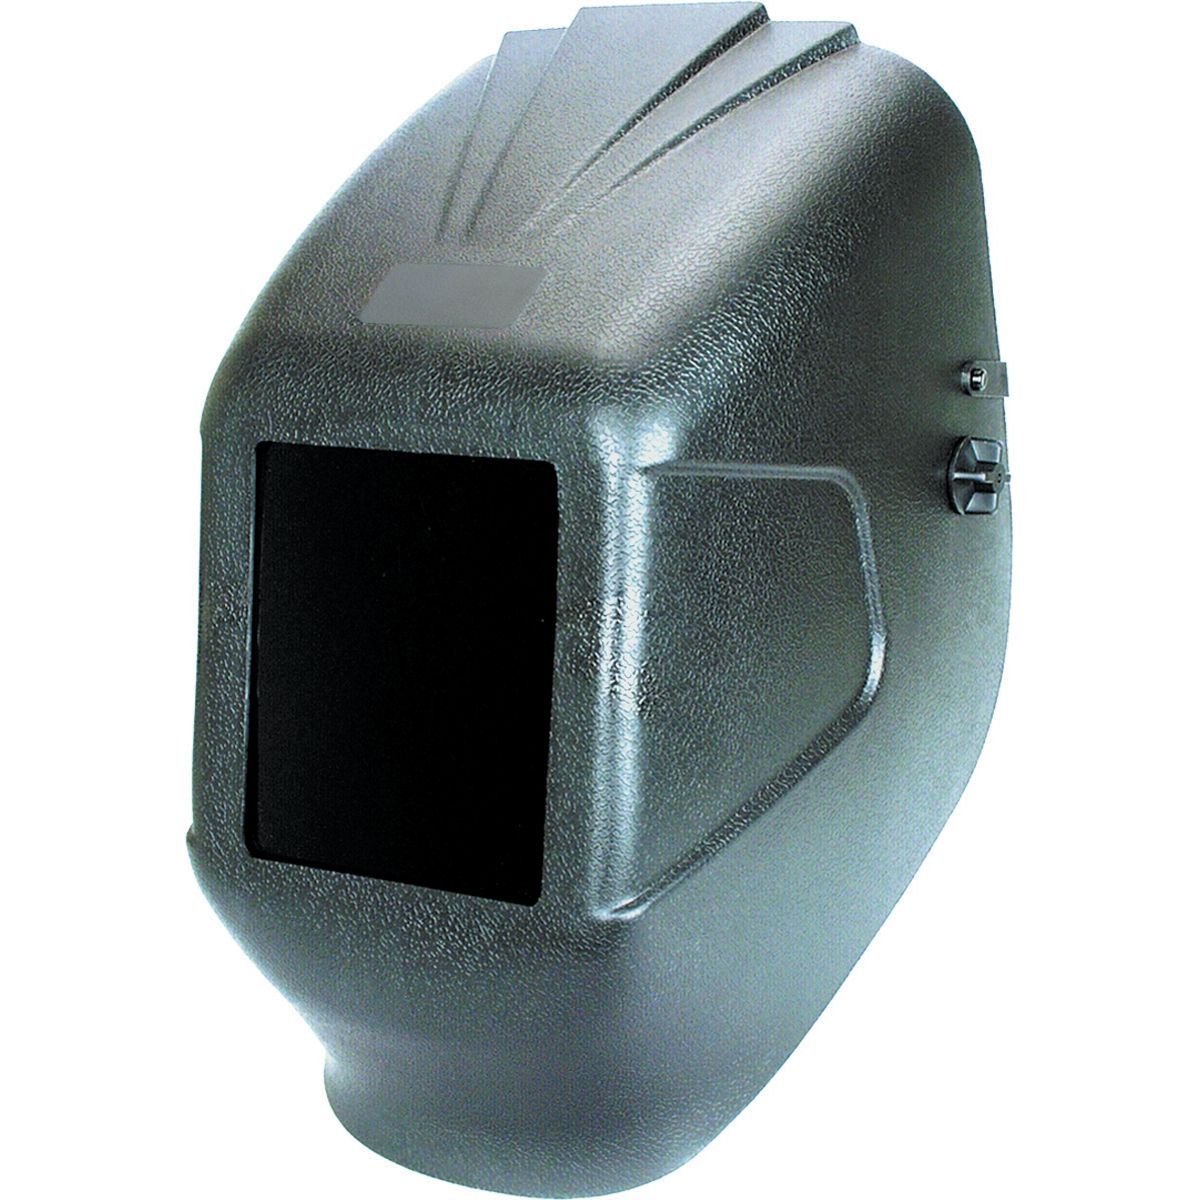 Eclipse Fixed Front Welding Helmet 5-1/4" x 4-1/2"